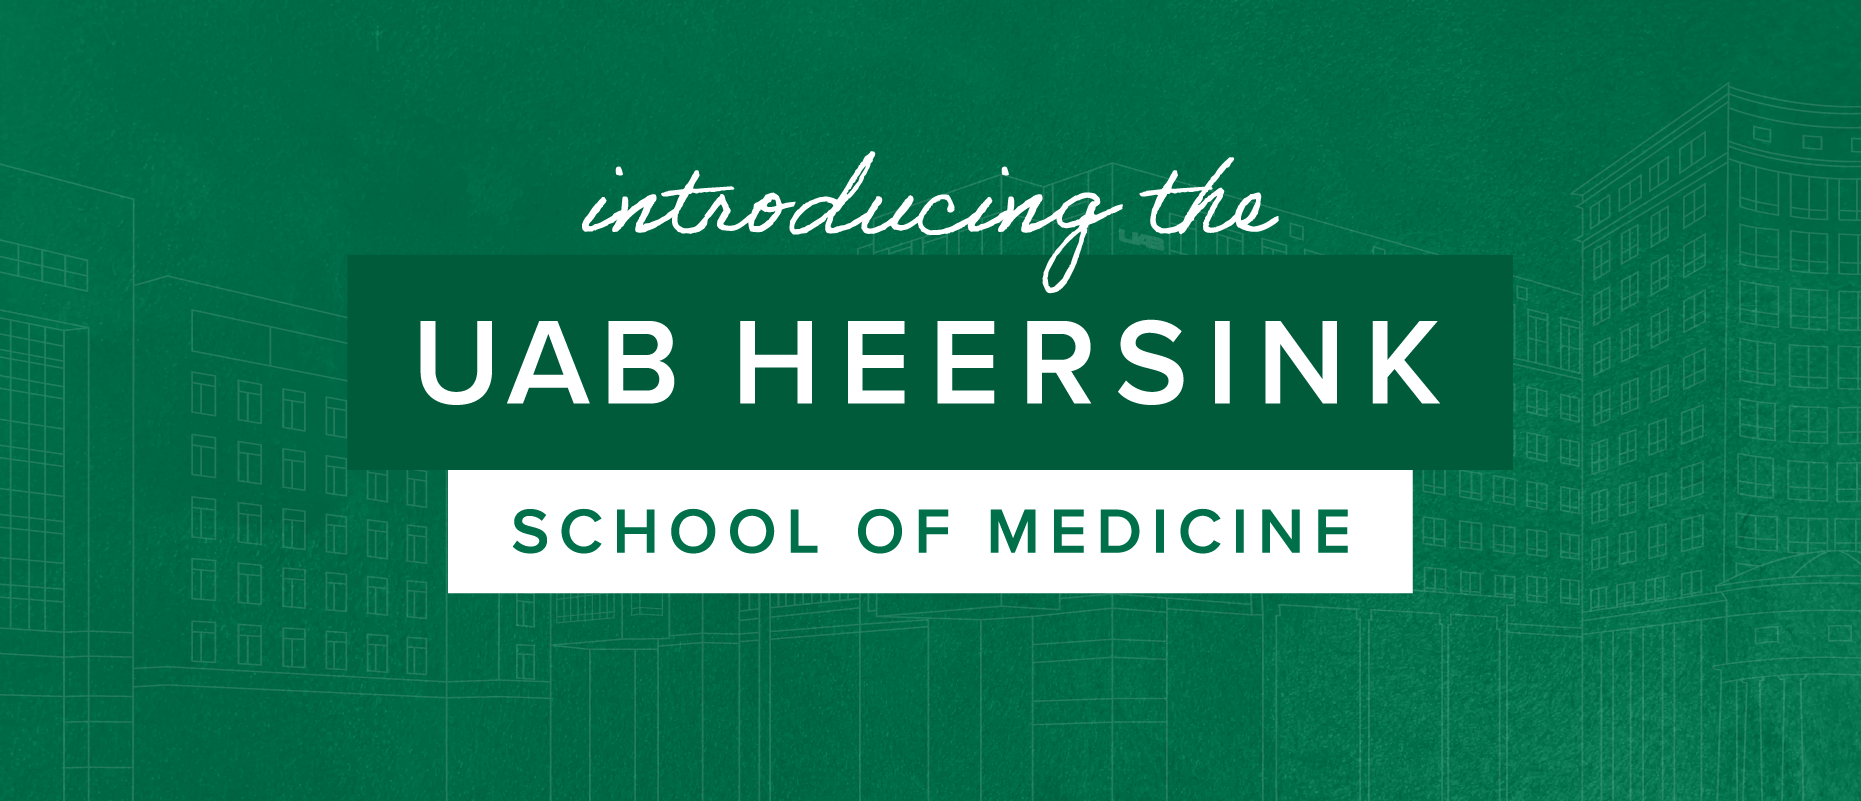 introducing-the-uab-heersink-school-of-medicine